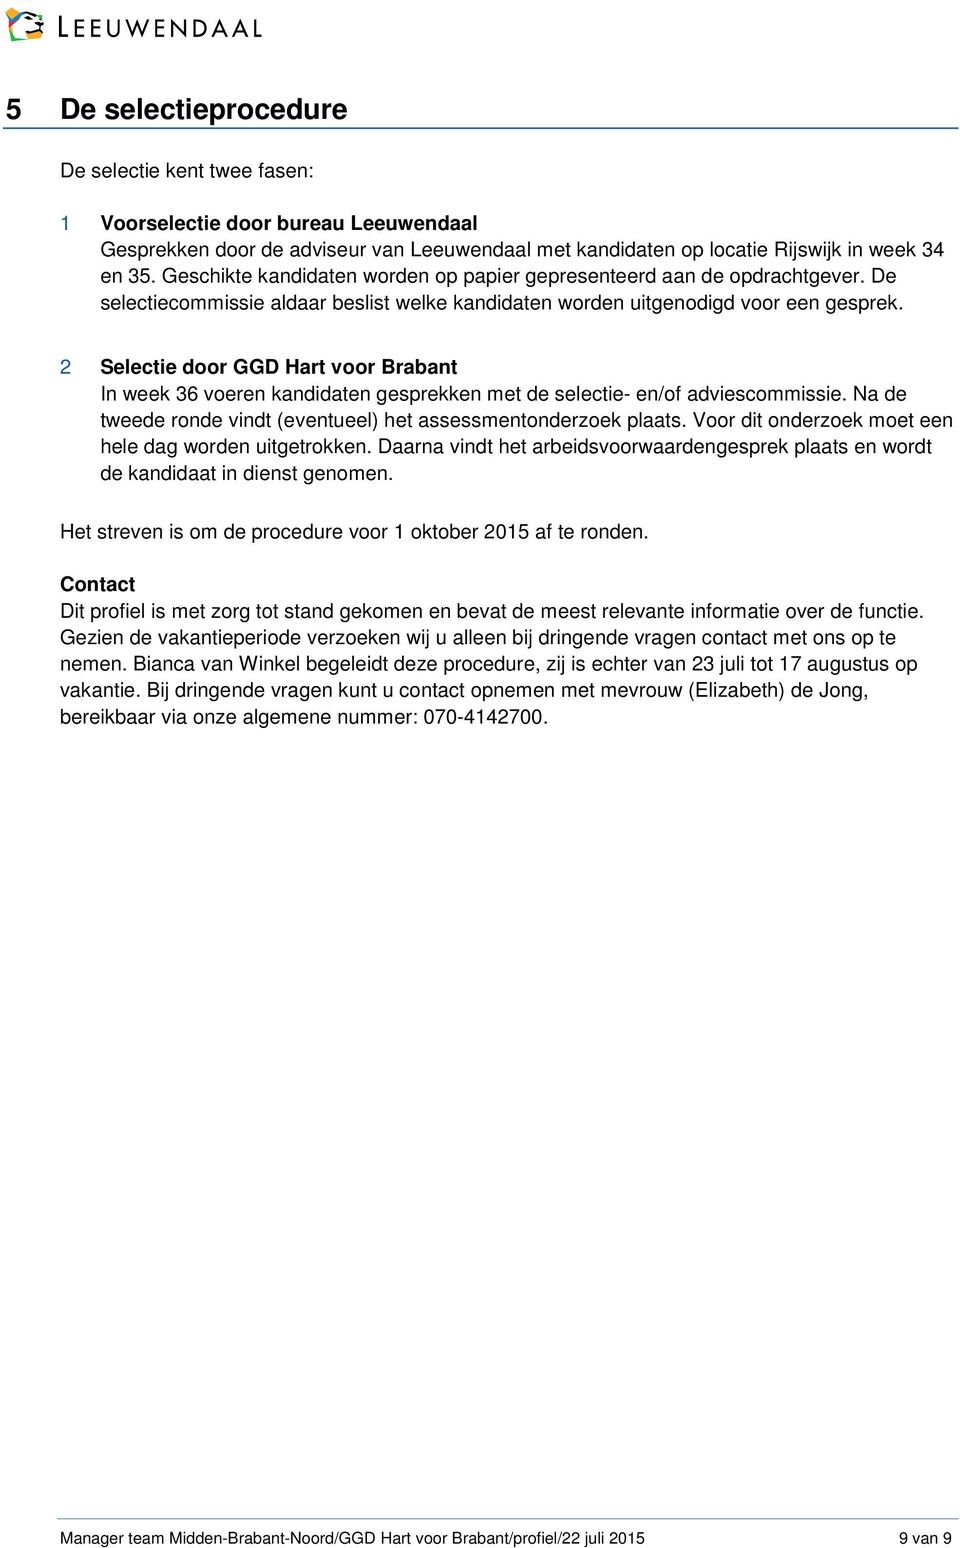 2 Selectie door GGD Hart voor Brabant In week 36 voeren kandidaten gesprekken met de selectie- en/of adviescommissie. Na de tweede ronde vindt (eventueel) het assessmentonderzoek plaats.